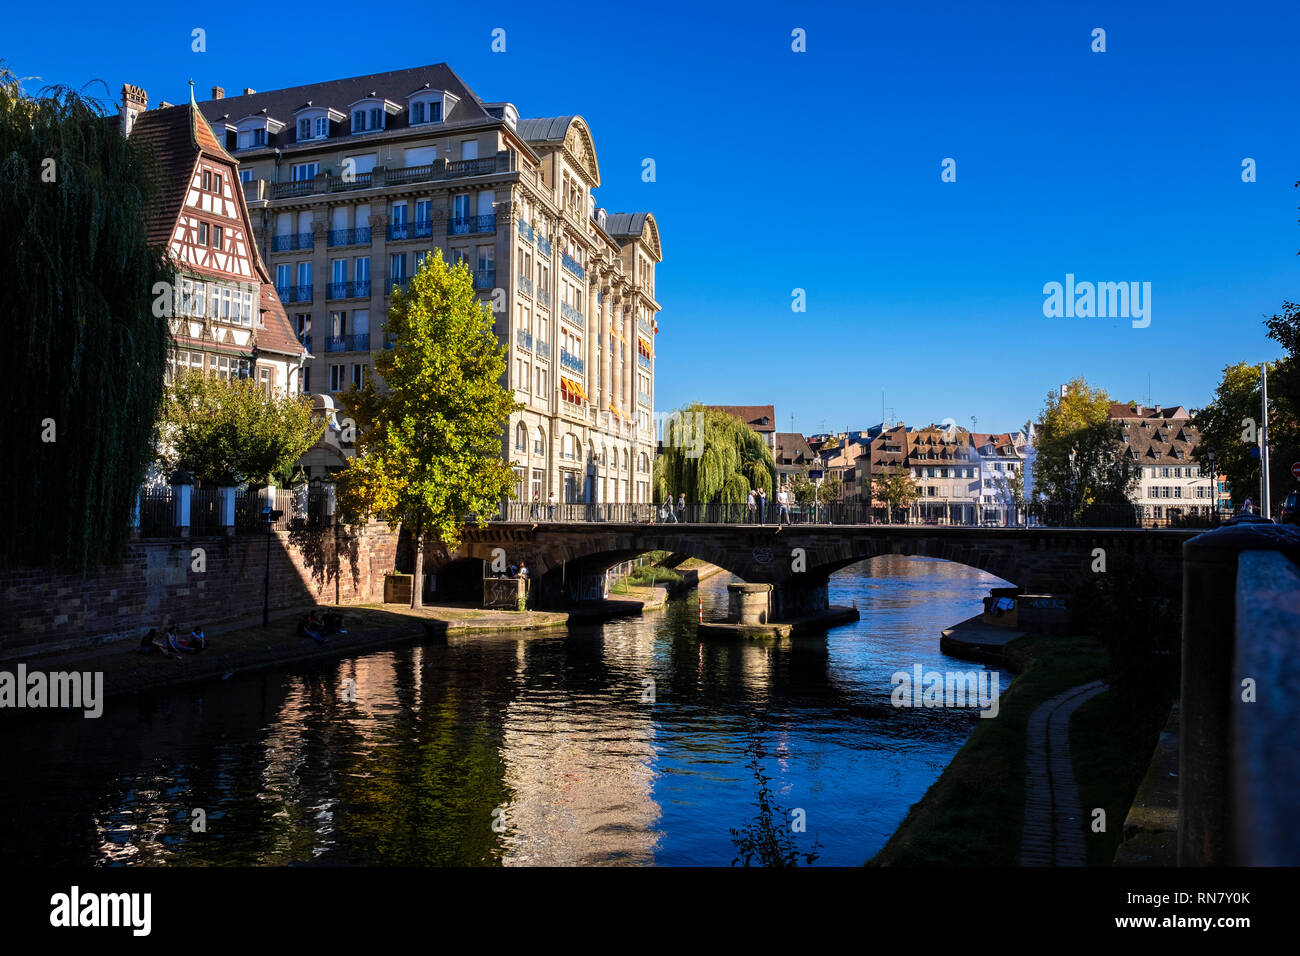 Strasbourg, Alsace, France, Europe, Fossé du Faux Rempart canal, residential buildings, Pont St Etienne bridge, Stock Photo